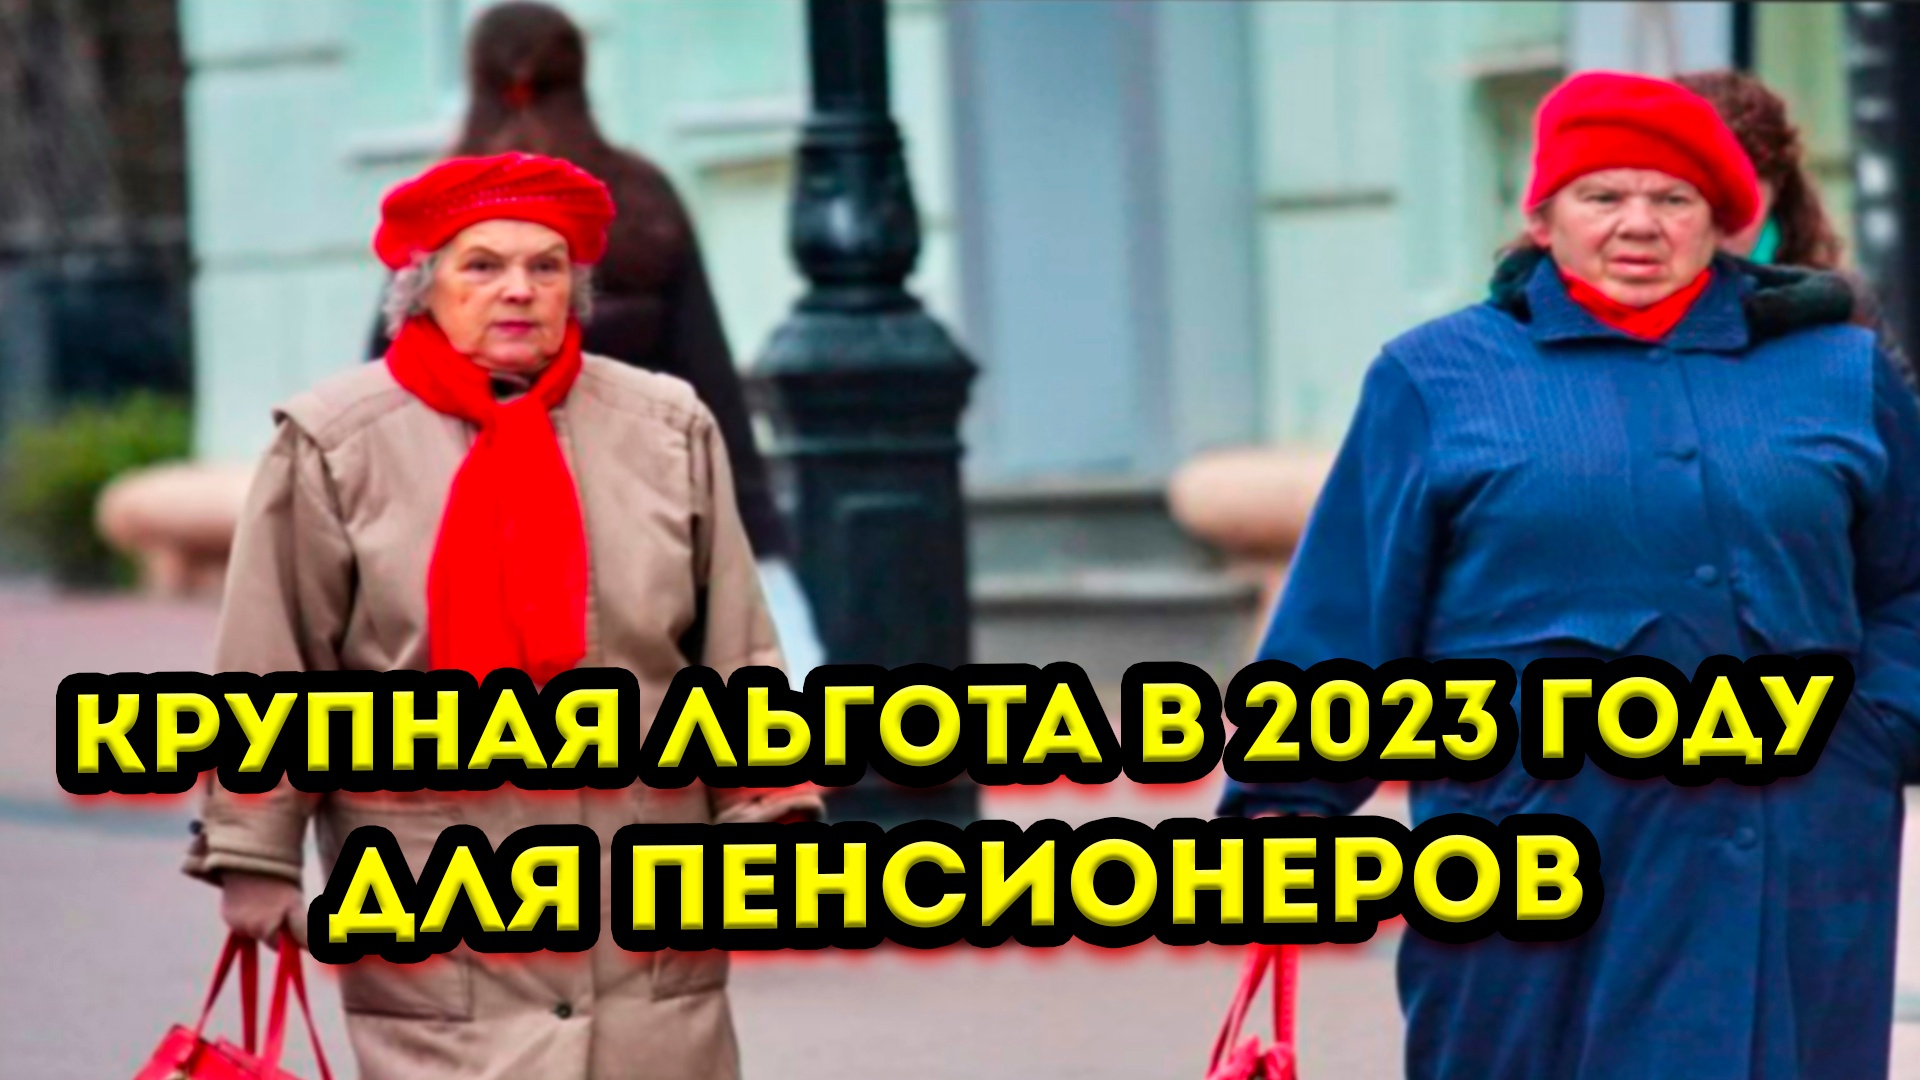 Новости пенсионерам 2023 году. Пенсионеры в России. Индексация пенсий в 2023. Льготы пенсионерам 2023. Бездомные пенсионеры.